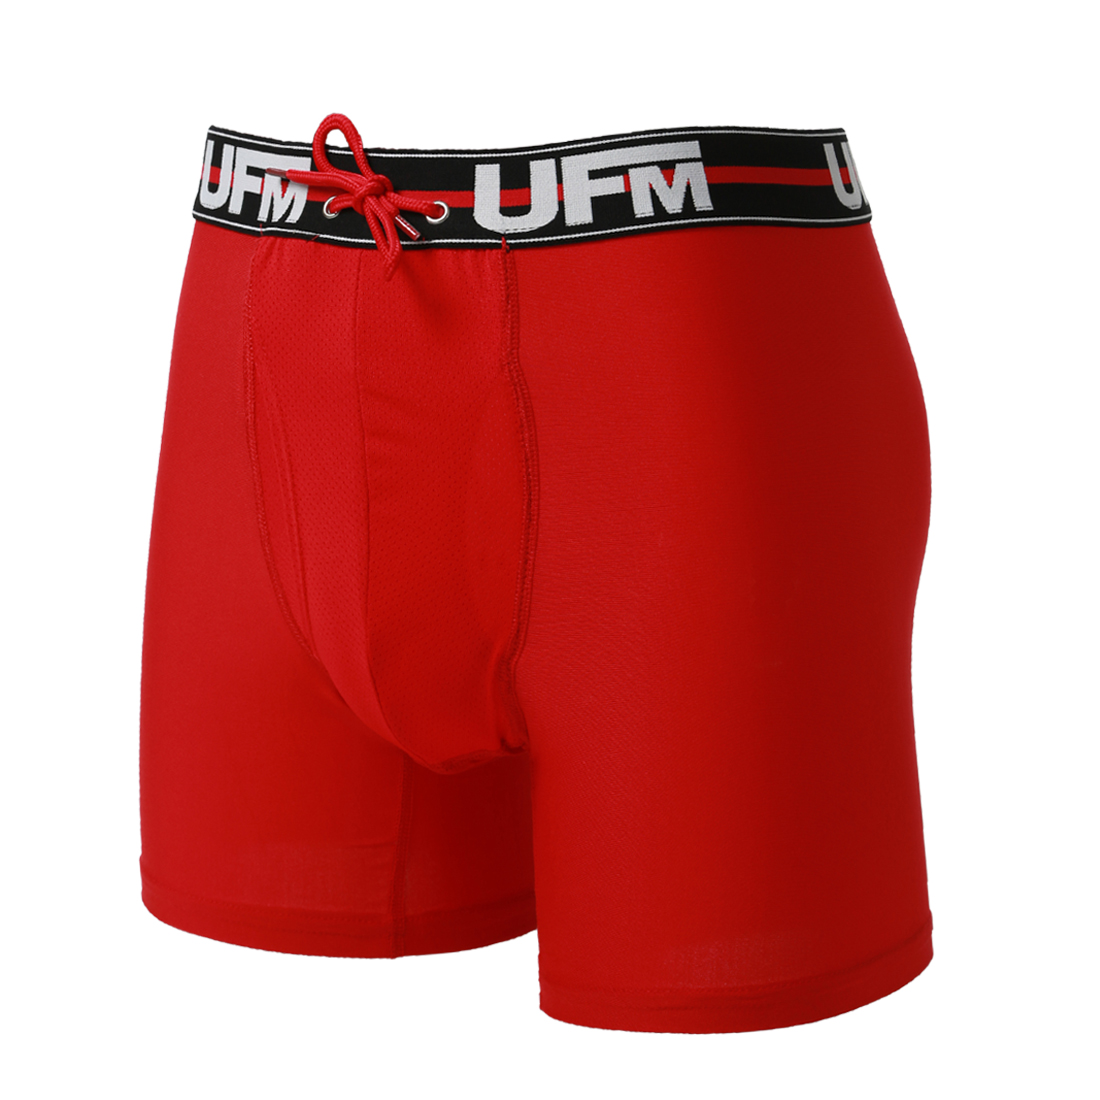 Parent UFM Underwear for Men Sport Polyester 6 inch Original Max Boxer Brief Red 800